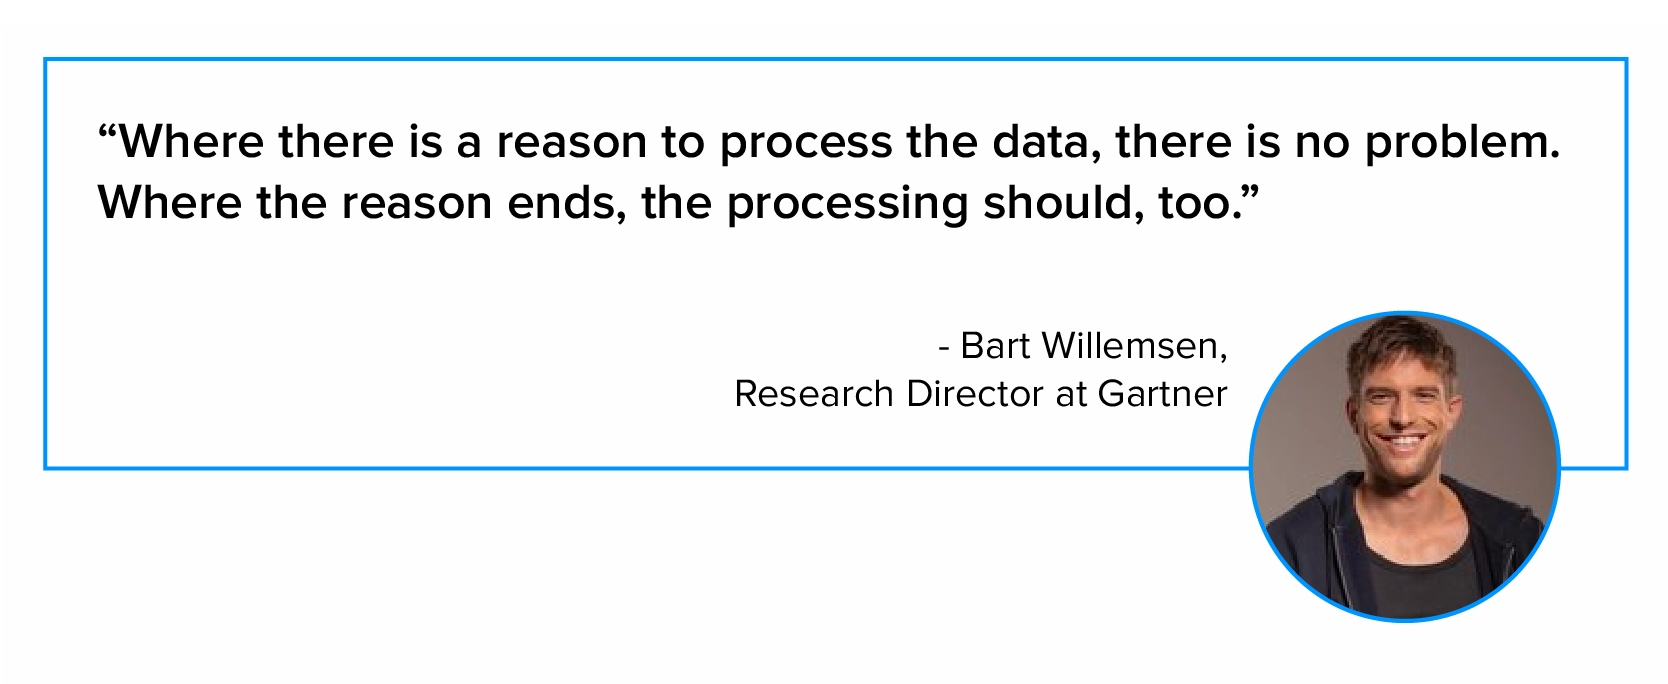 巴特威廉森 (Bart Willemsen) 關於資料處理的引述